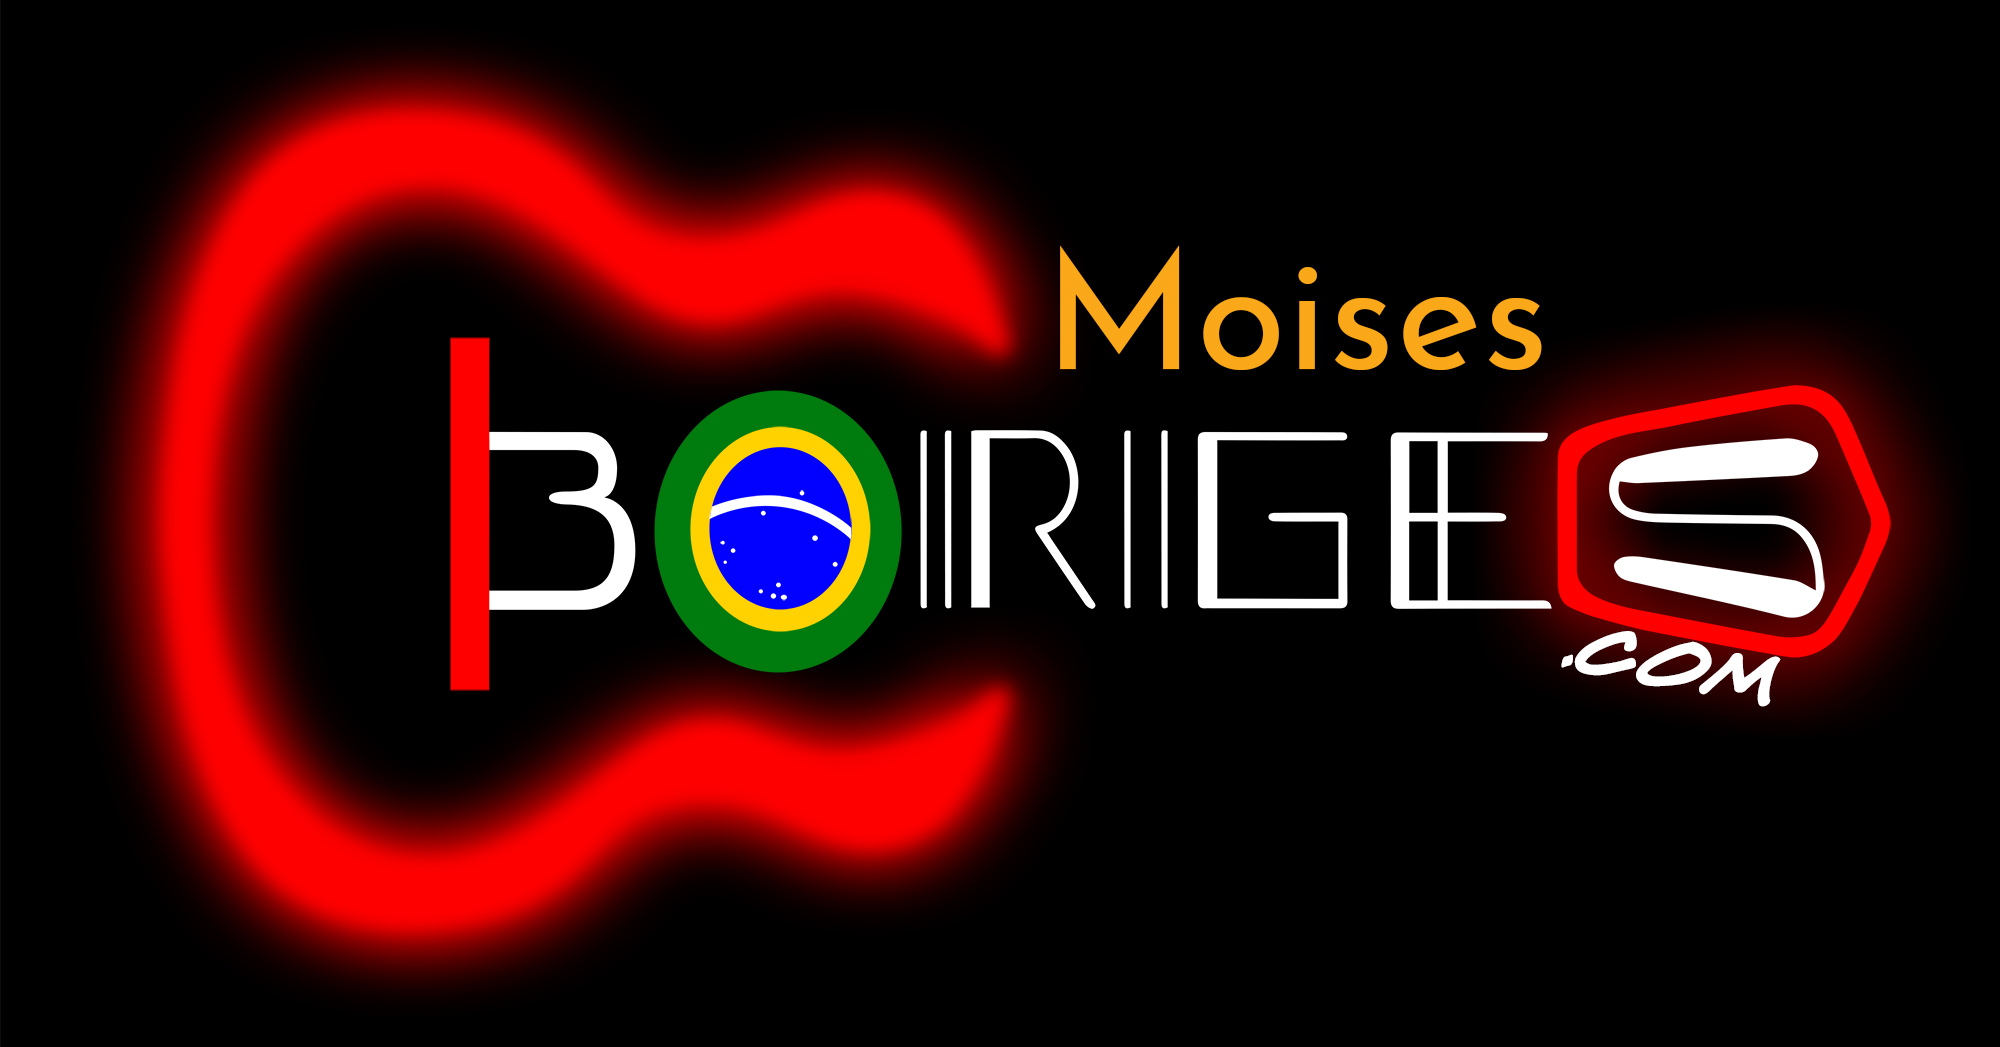 Moises Borges